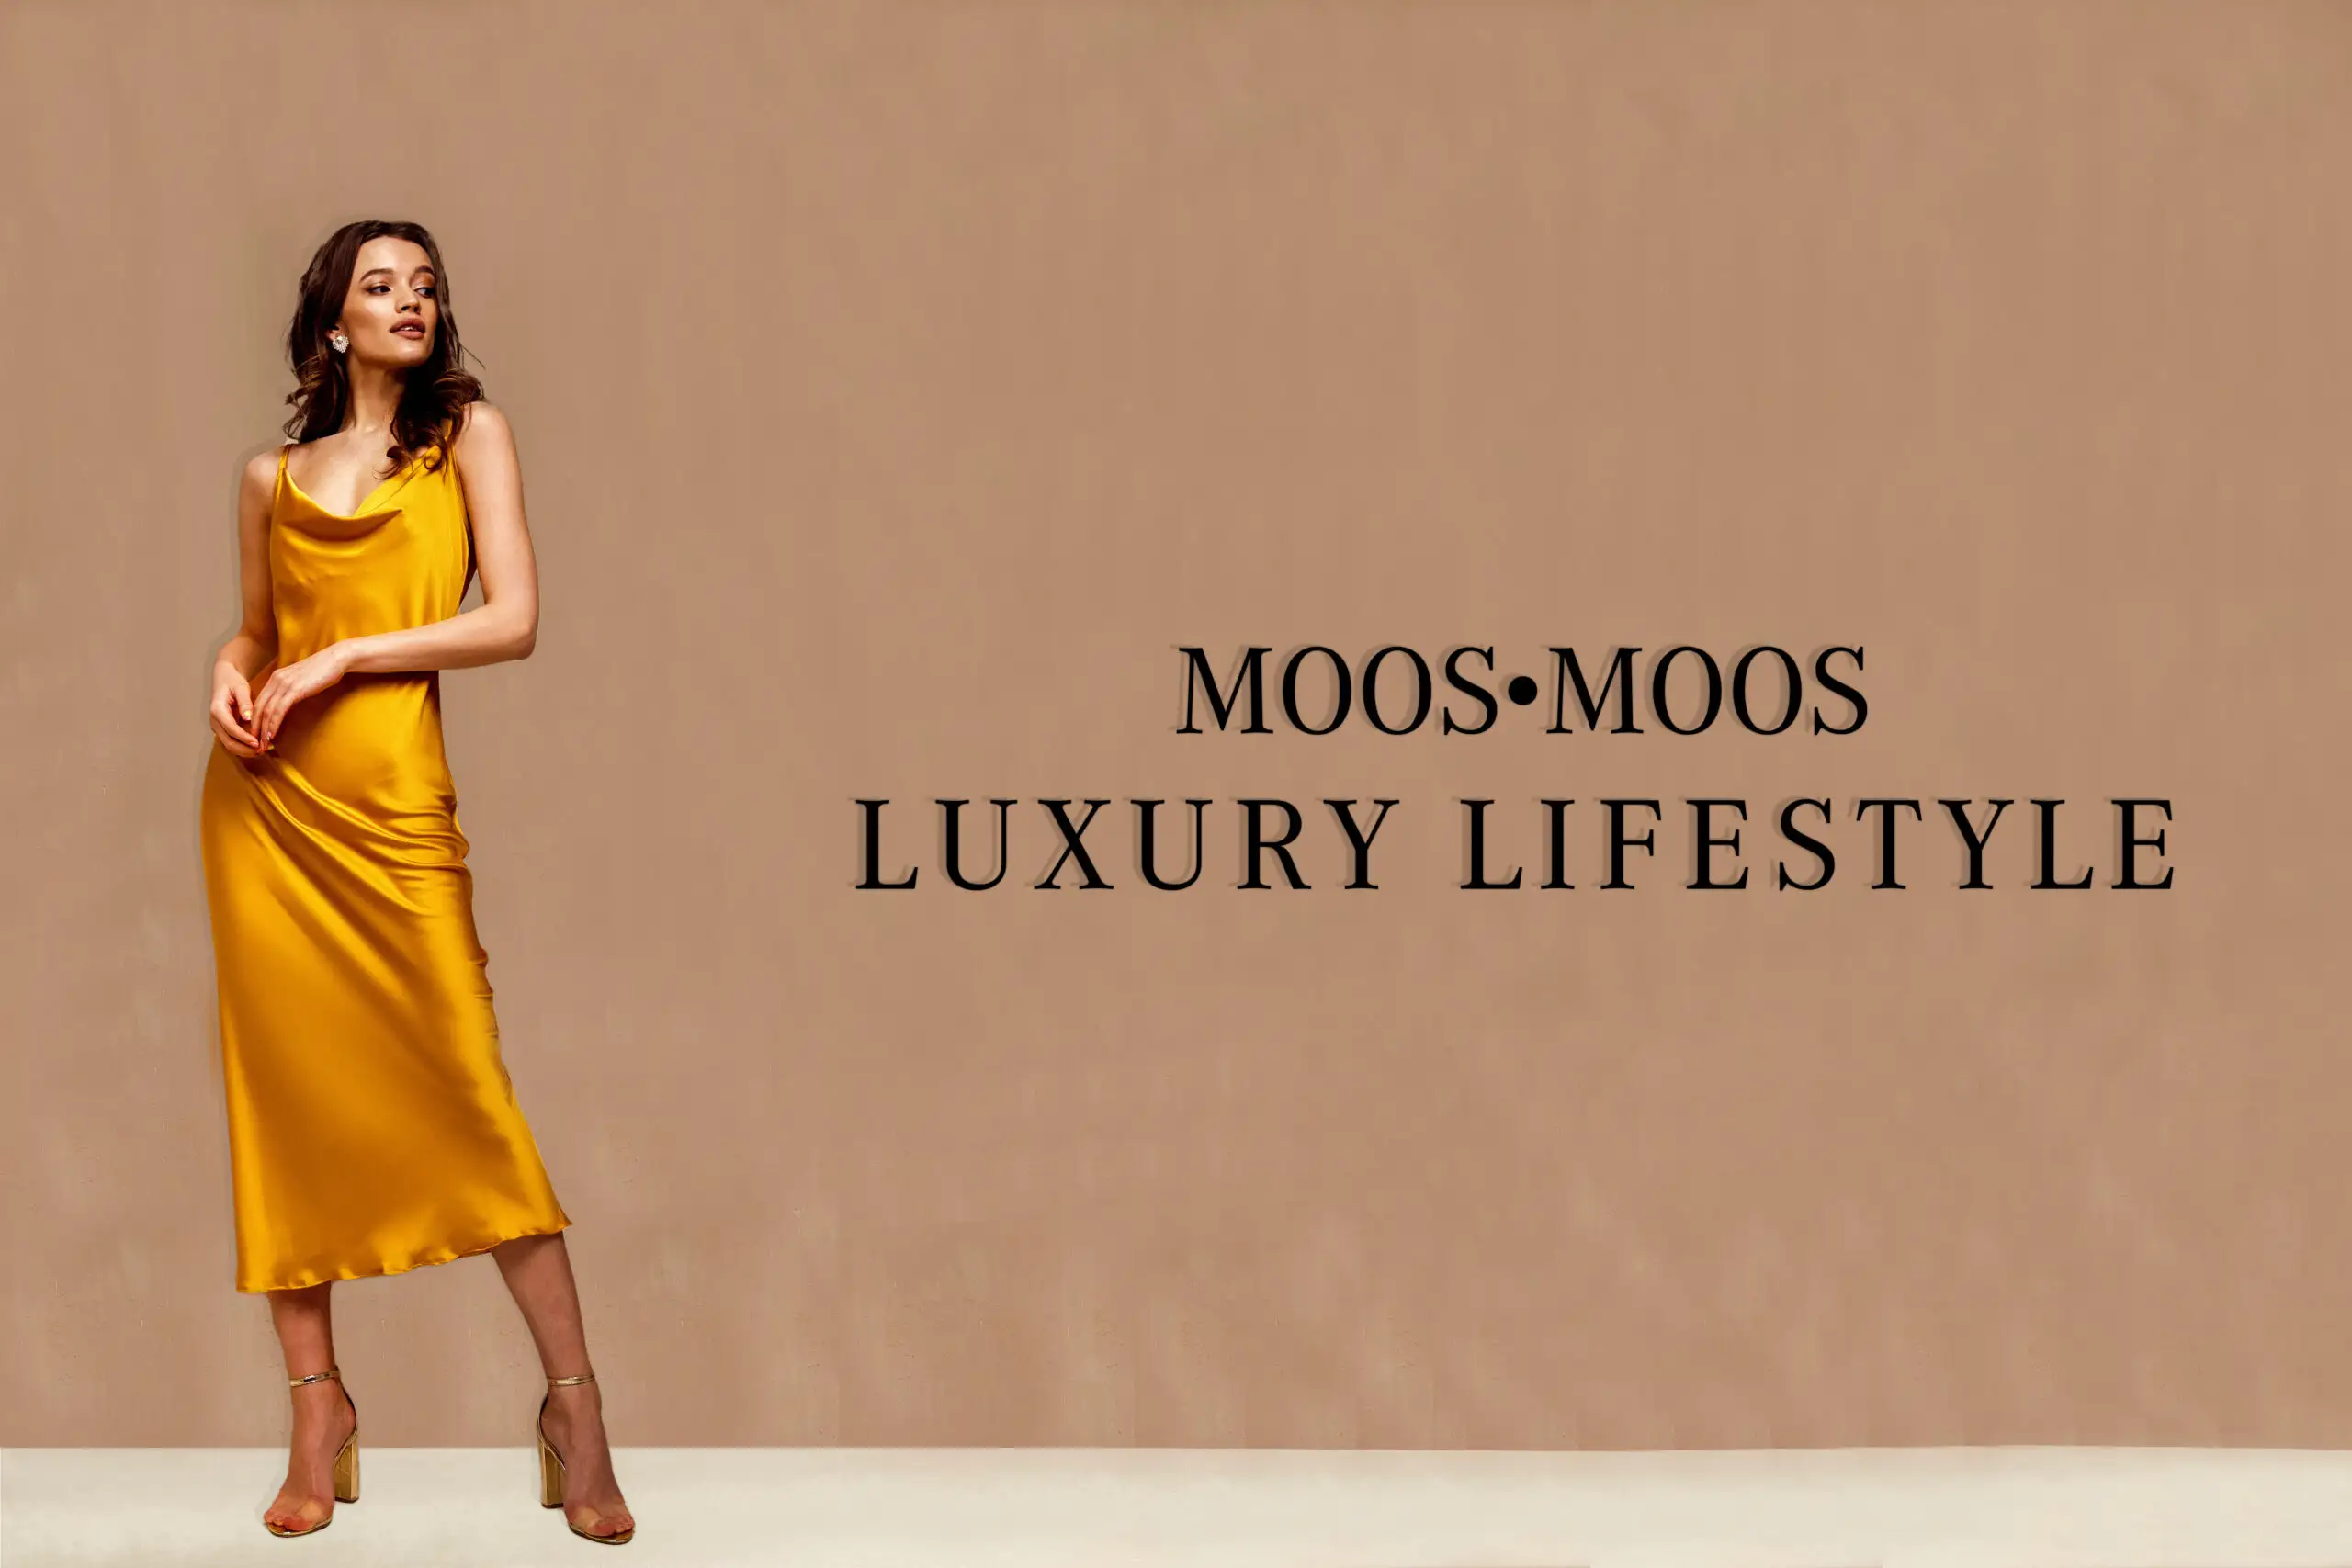 Luxury Lifestyle Titelbild. Frau im goldenen Kleid vor brauner Wand